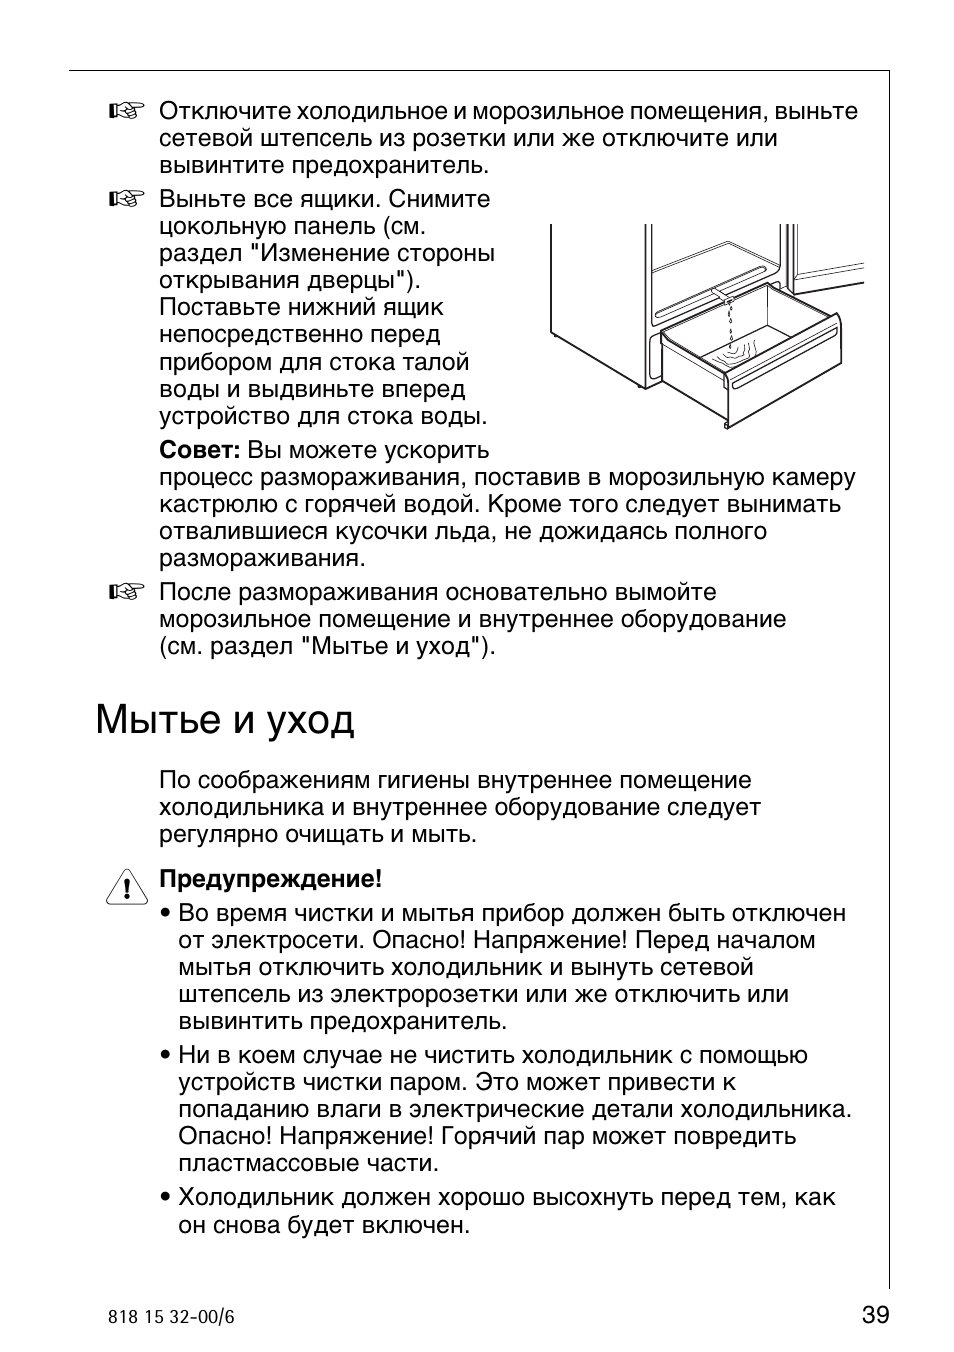 Инструкция по обработке холодильников